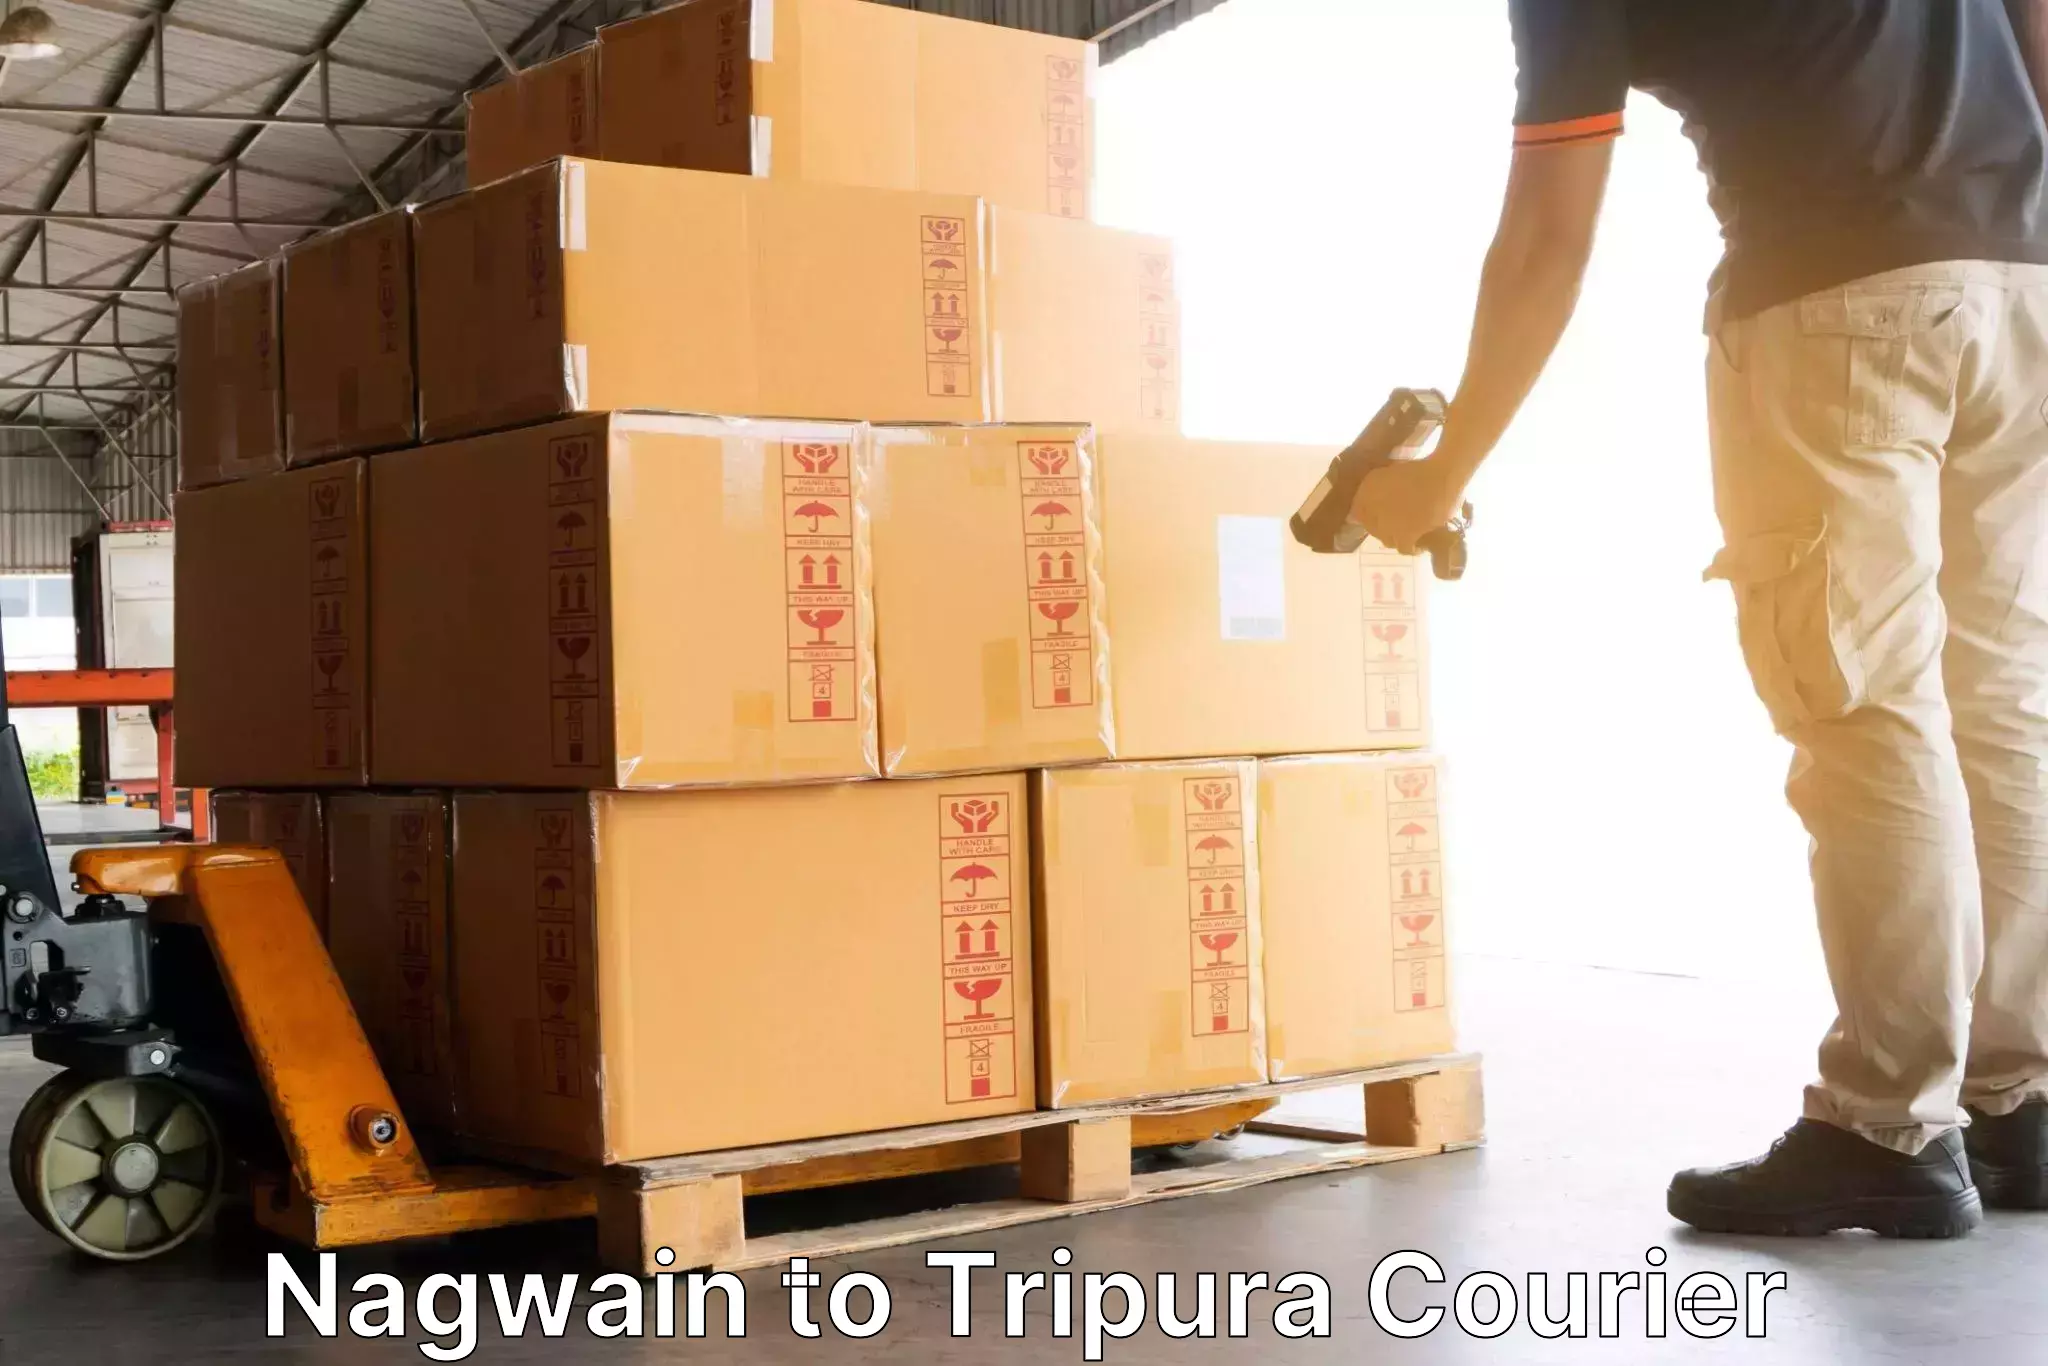 24-hour courier service Nagwain to Tripura